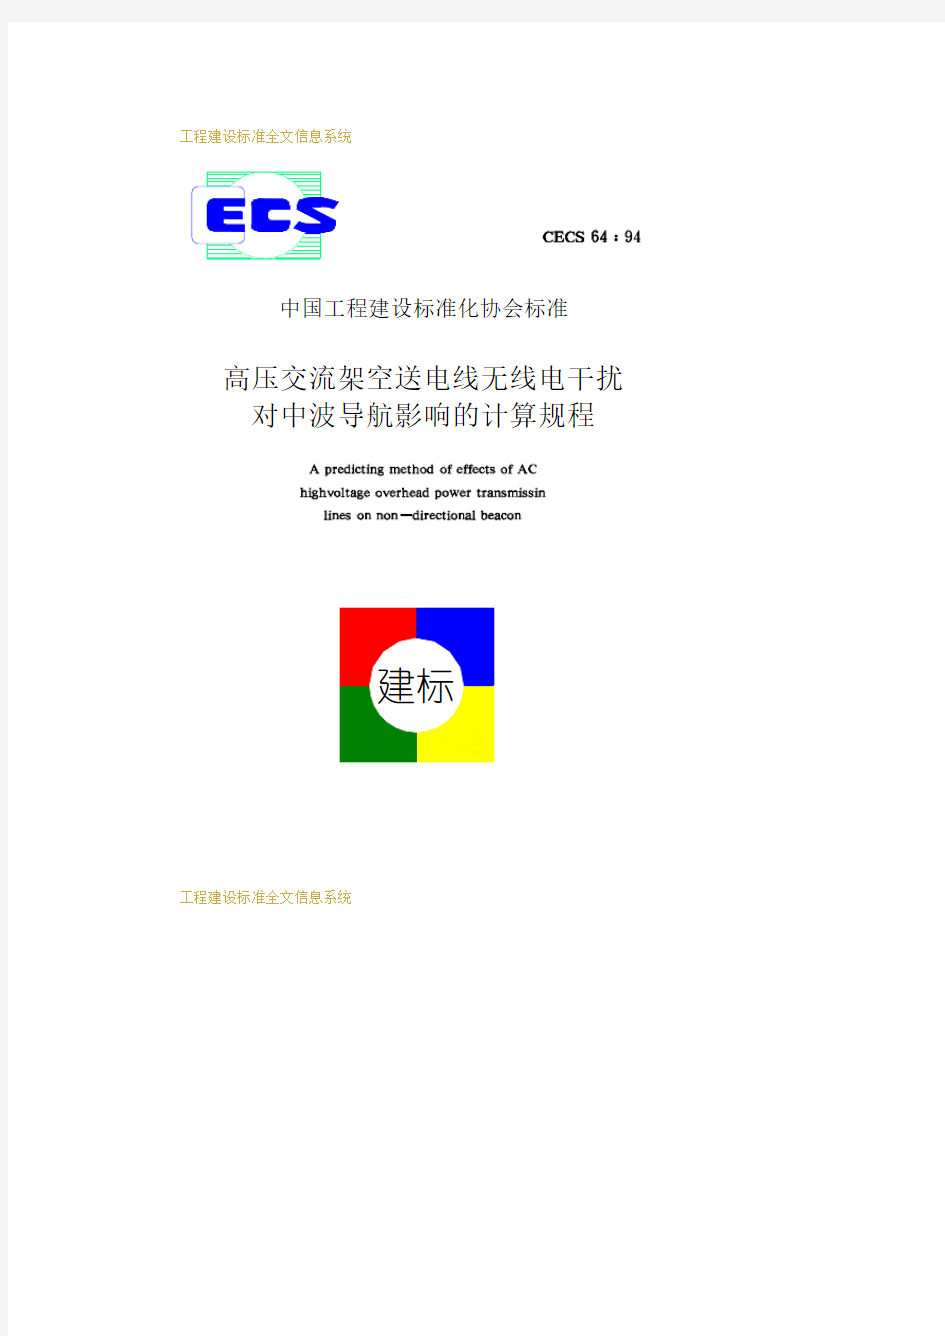 CECS64-94高压交流架空送电线无线电干扰对中波导航影响的计算规程